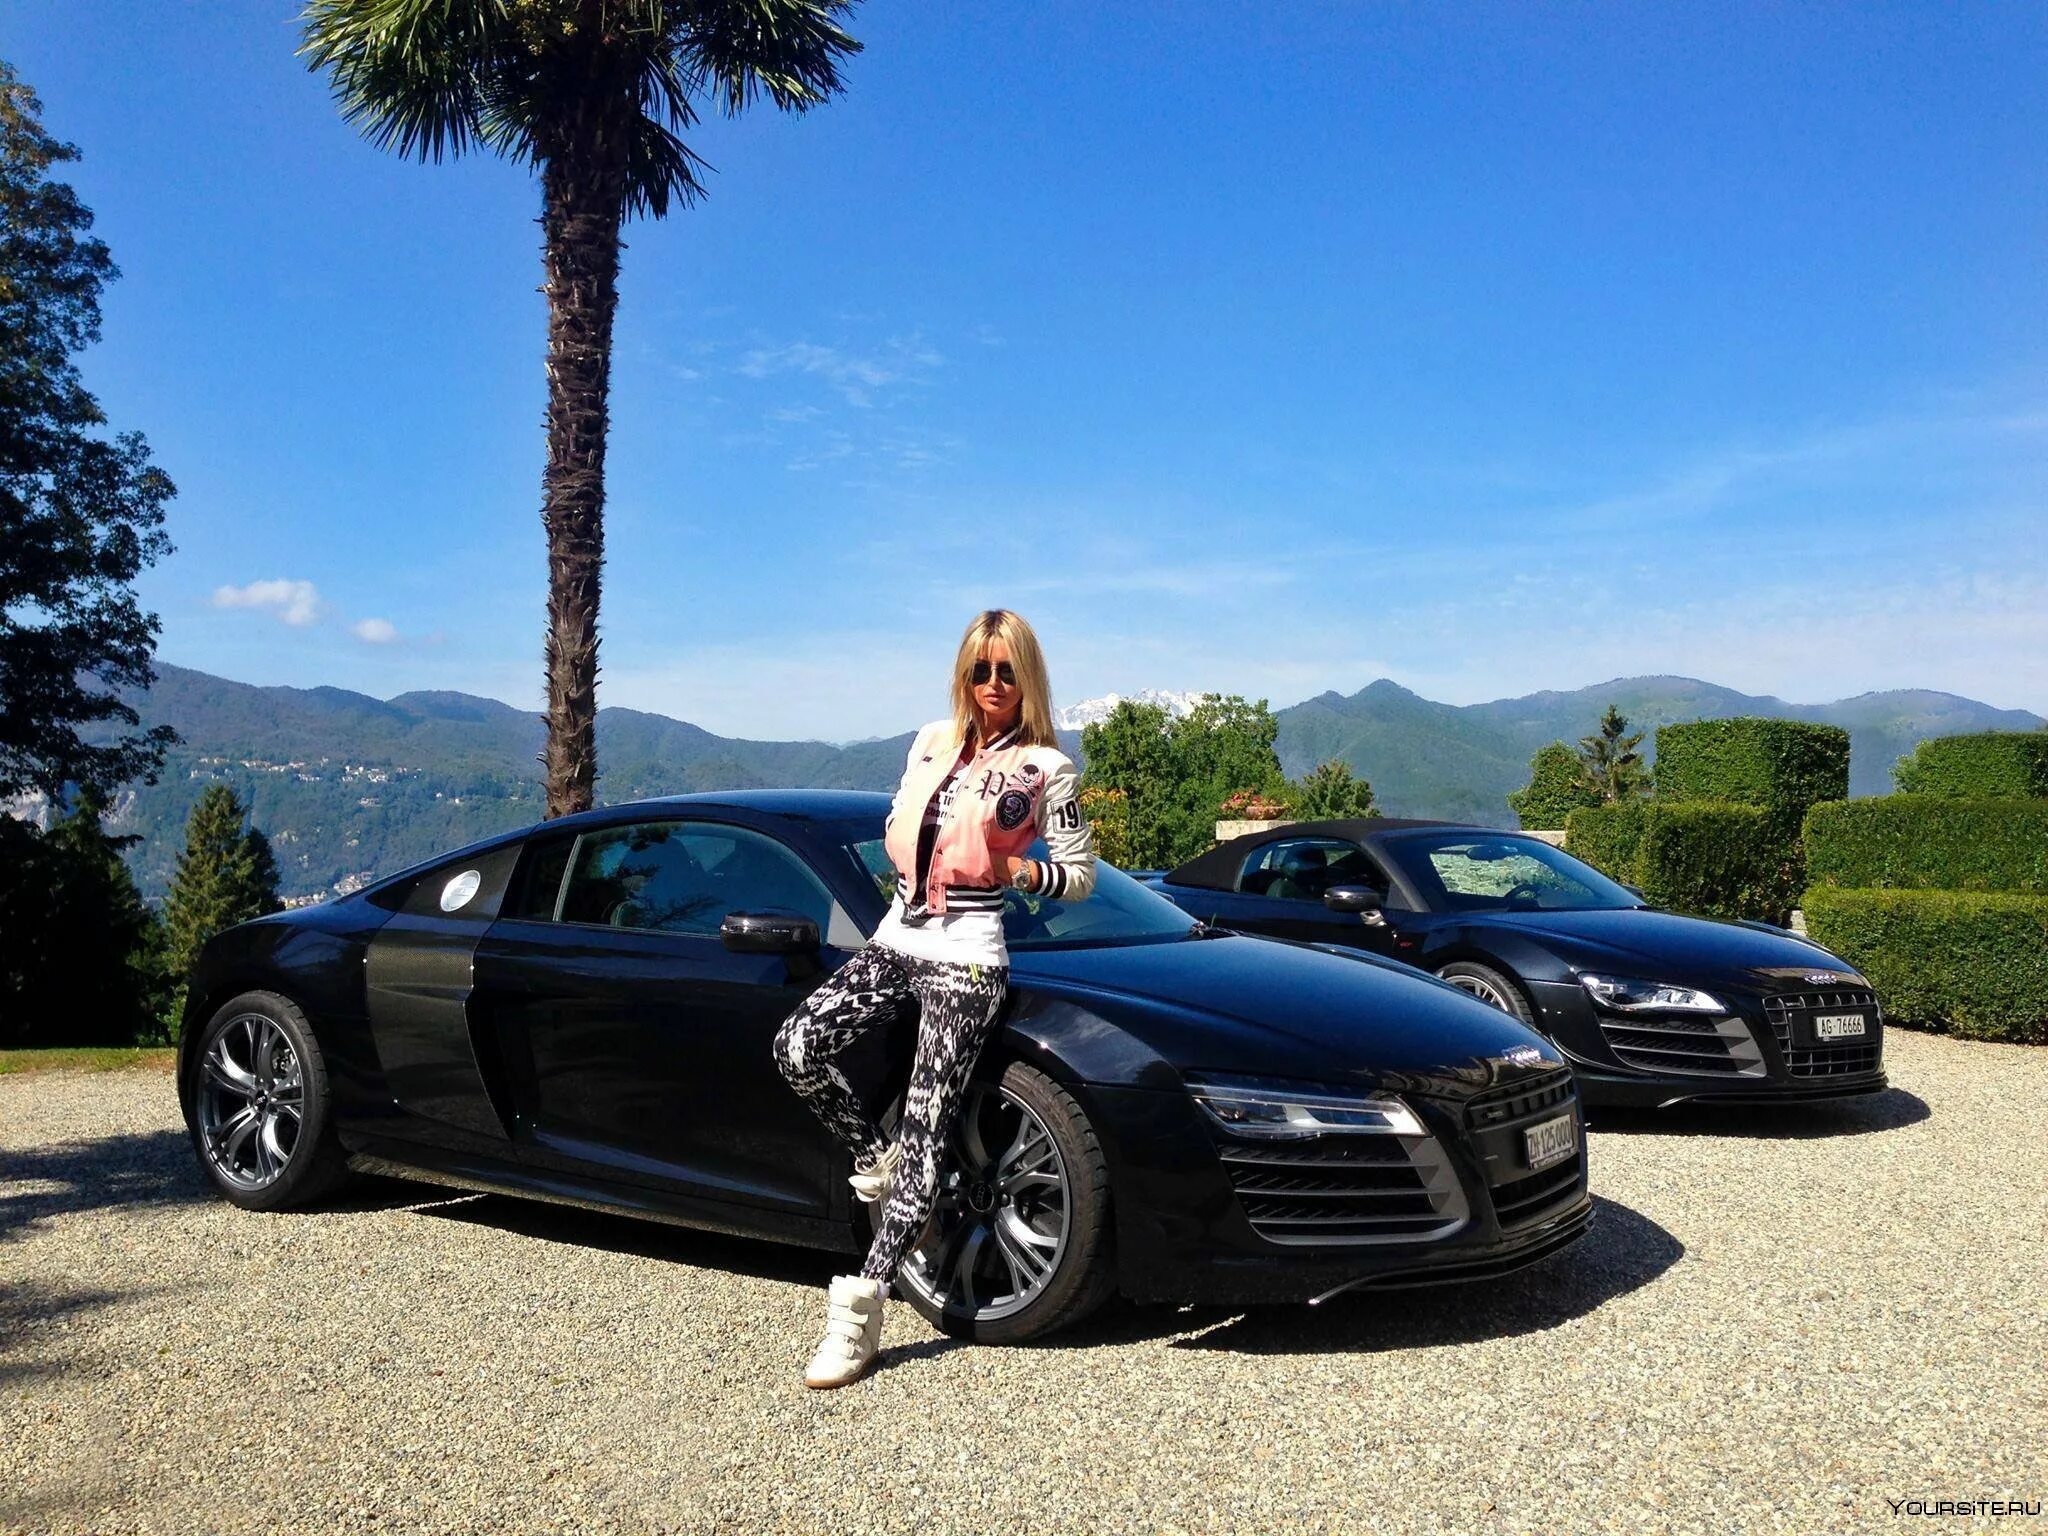 Фото около машины. Блондинка возле машины. Богатая жизнь. Богатая девушка. Красивые фото на фоне машины.